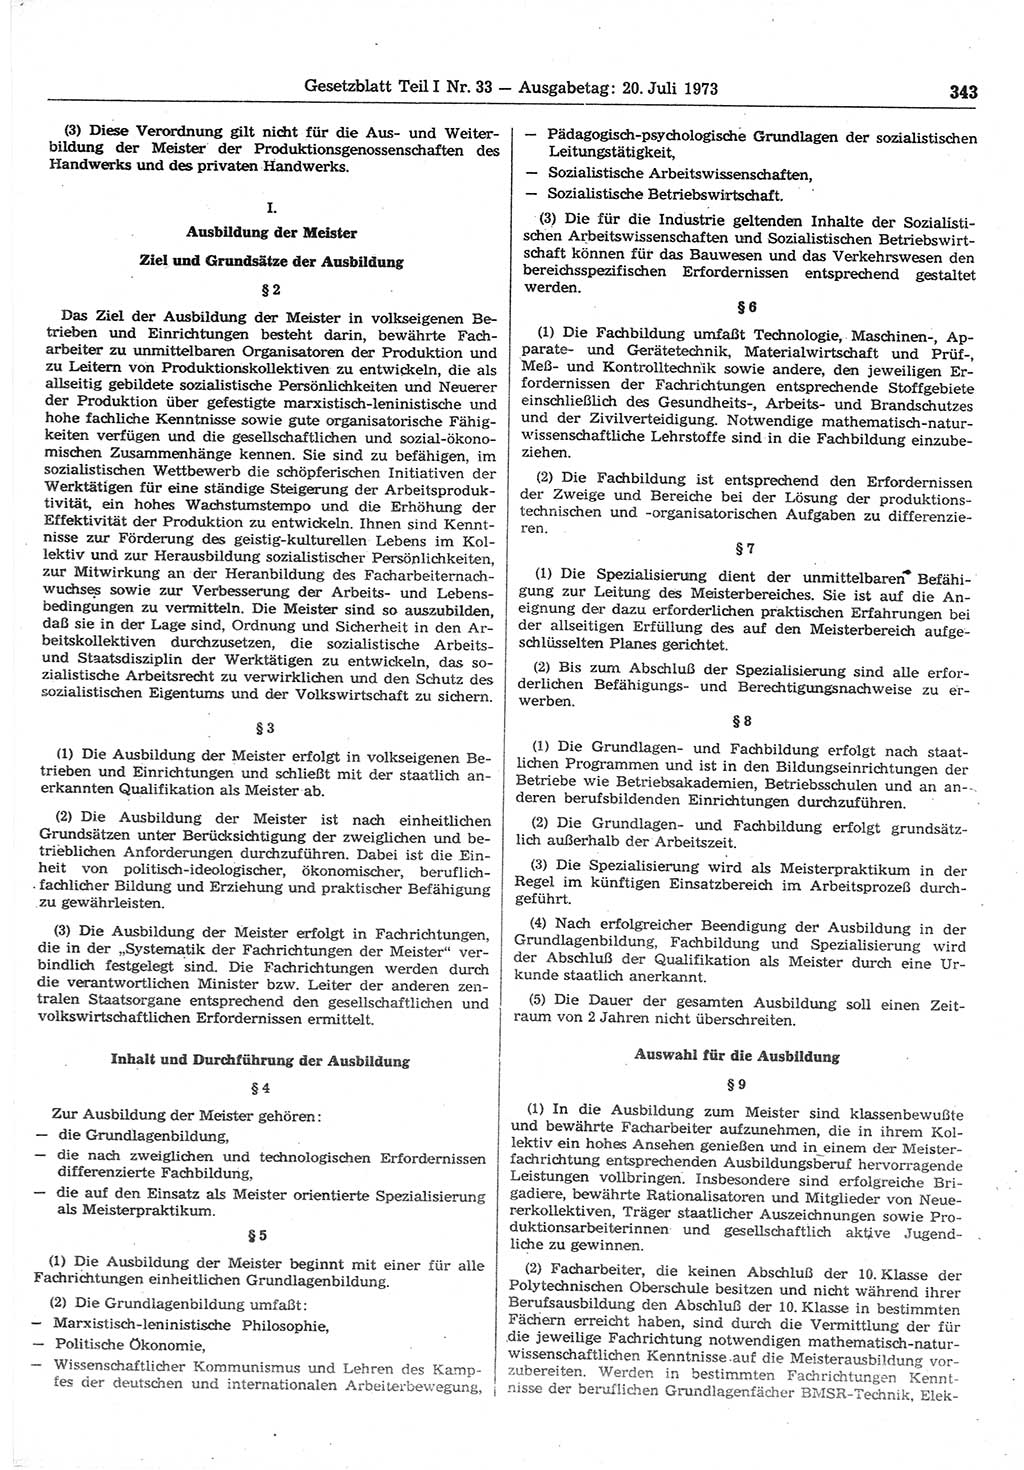 Gesetzblatt (GBl.) der Deutschen Demokratischen Republik (DDR) Teil Ⅰ 1973, Seite 343 (GBl. DDR Ⅰ 1973, S. 343)